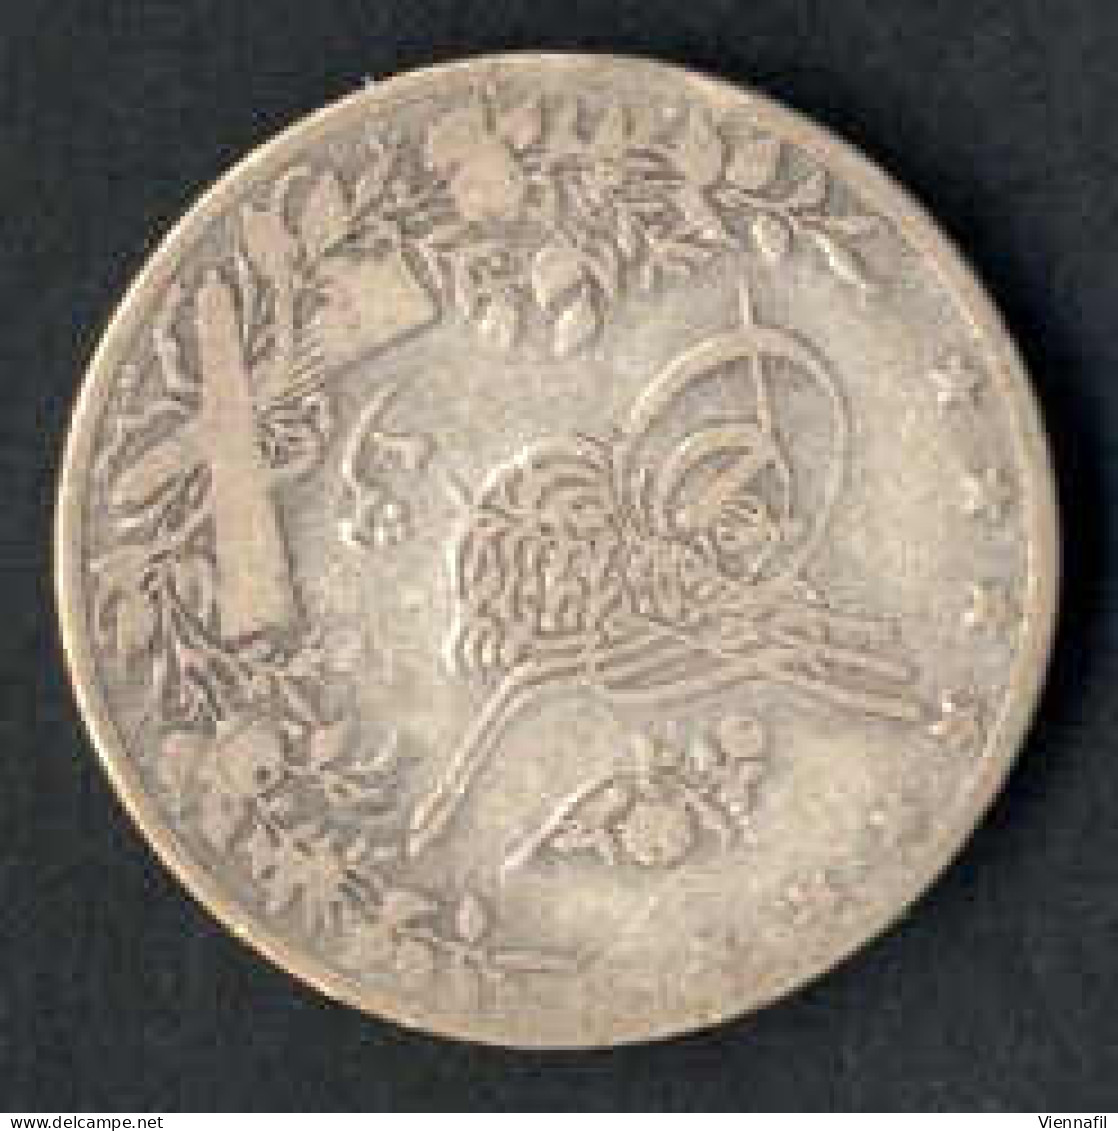 Abdül Hamid II., 1293-1327AH 1876-1909, 1,2,5 Qirsh Silber, verschiedene Jahre Misr, Y 17, 18 selten, 19,20, schön - vor